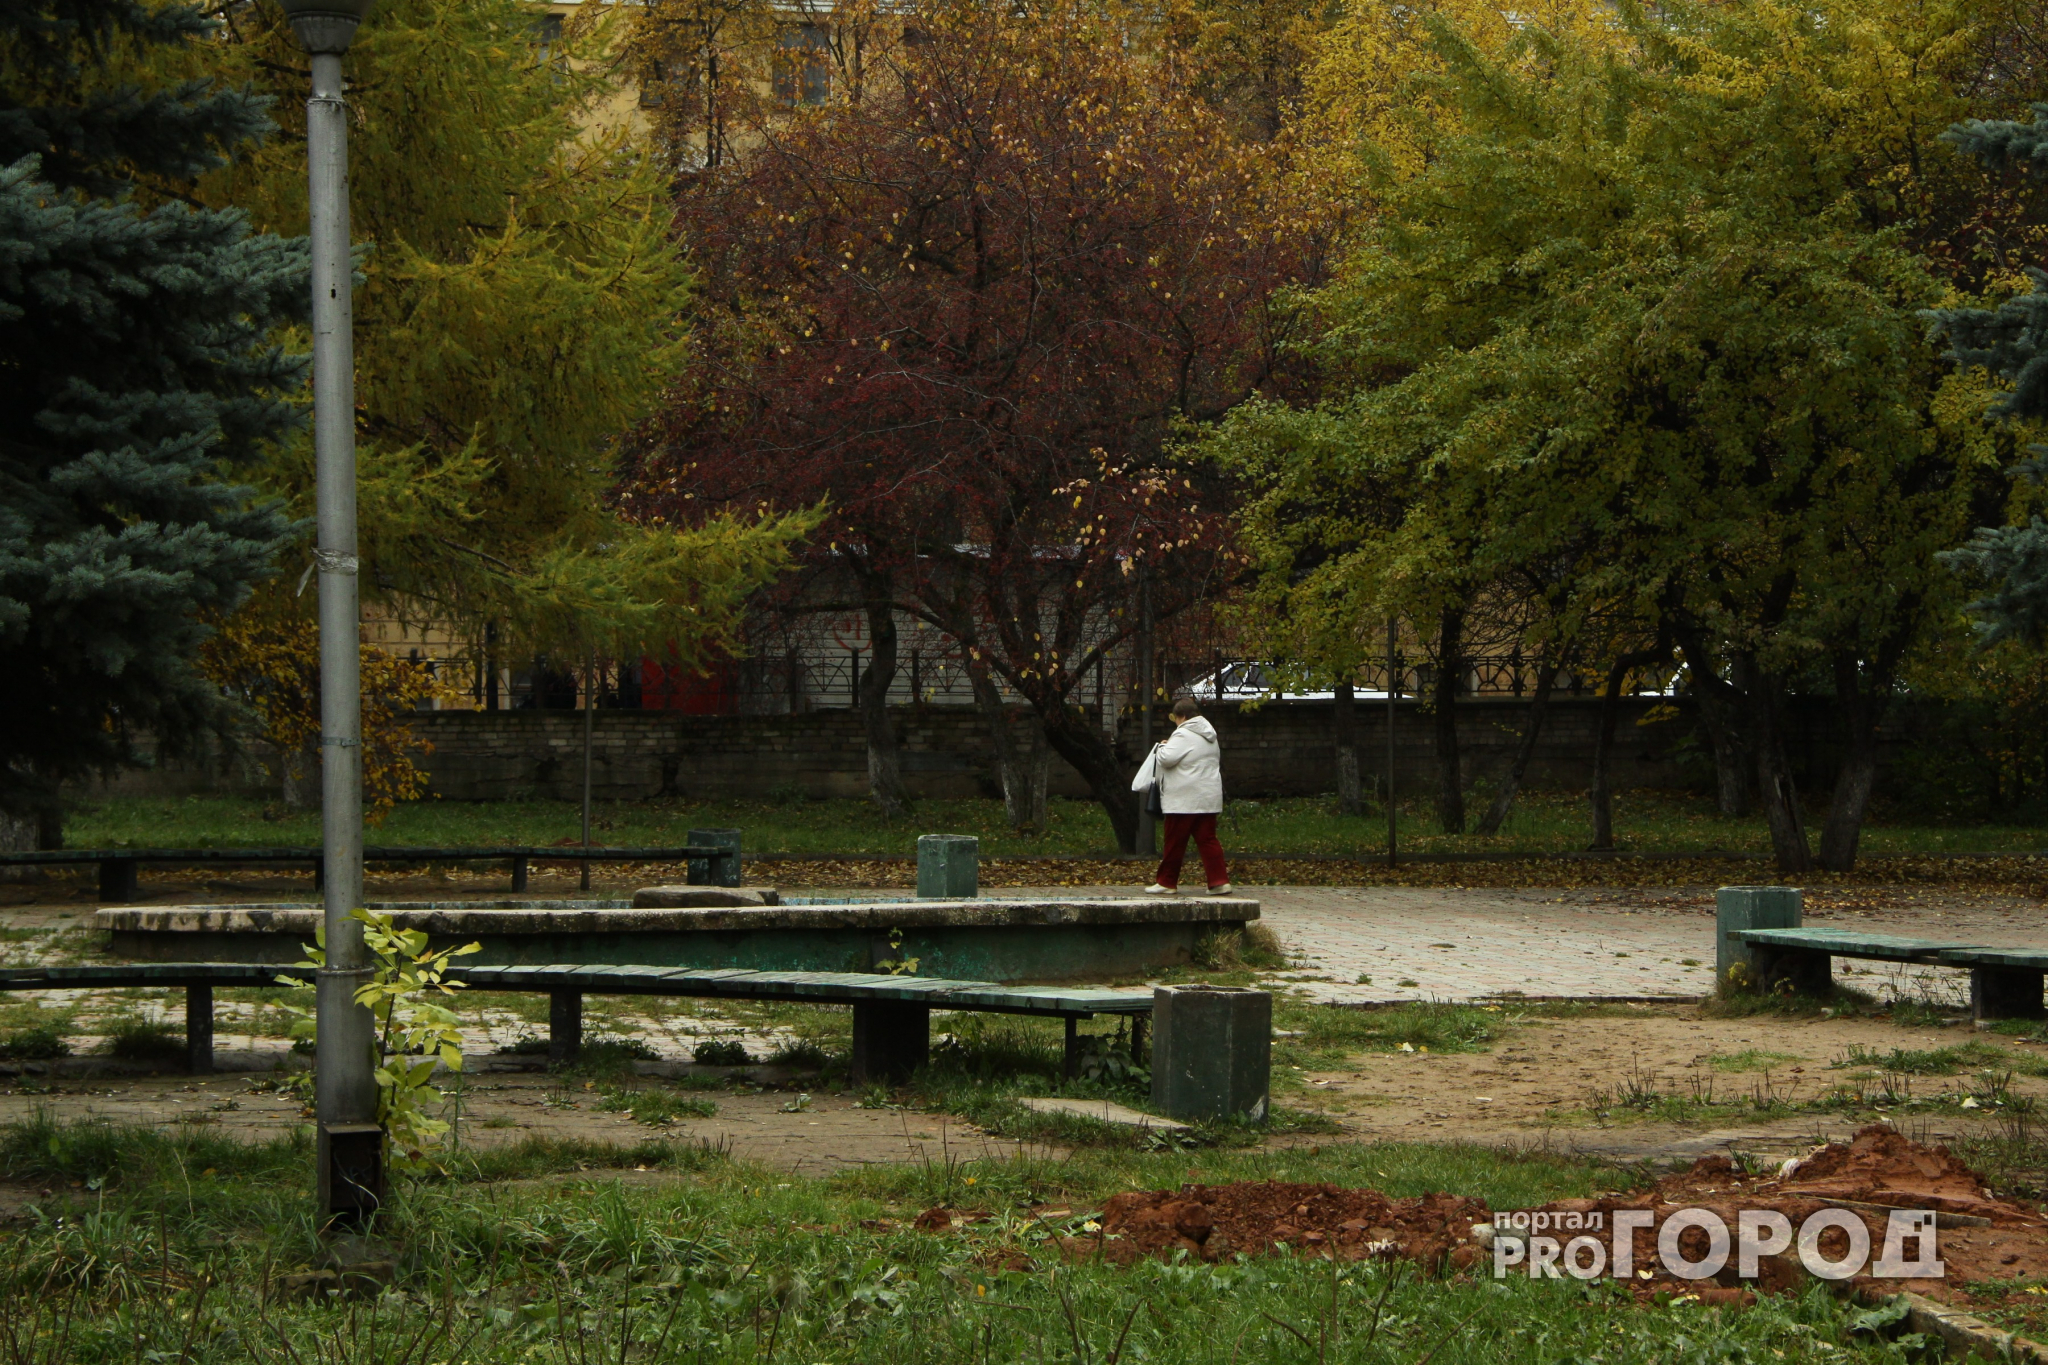 Прогноз погоды: какими будут первые осенние выходные в Кирово-Чепецке?